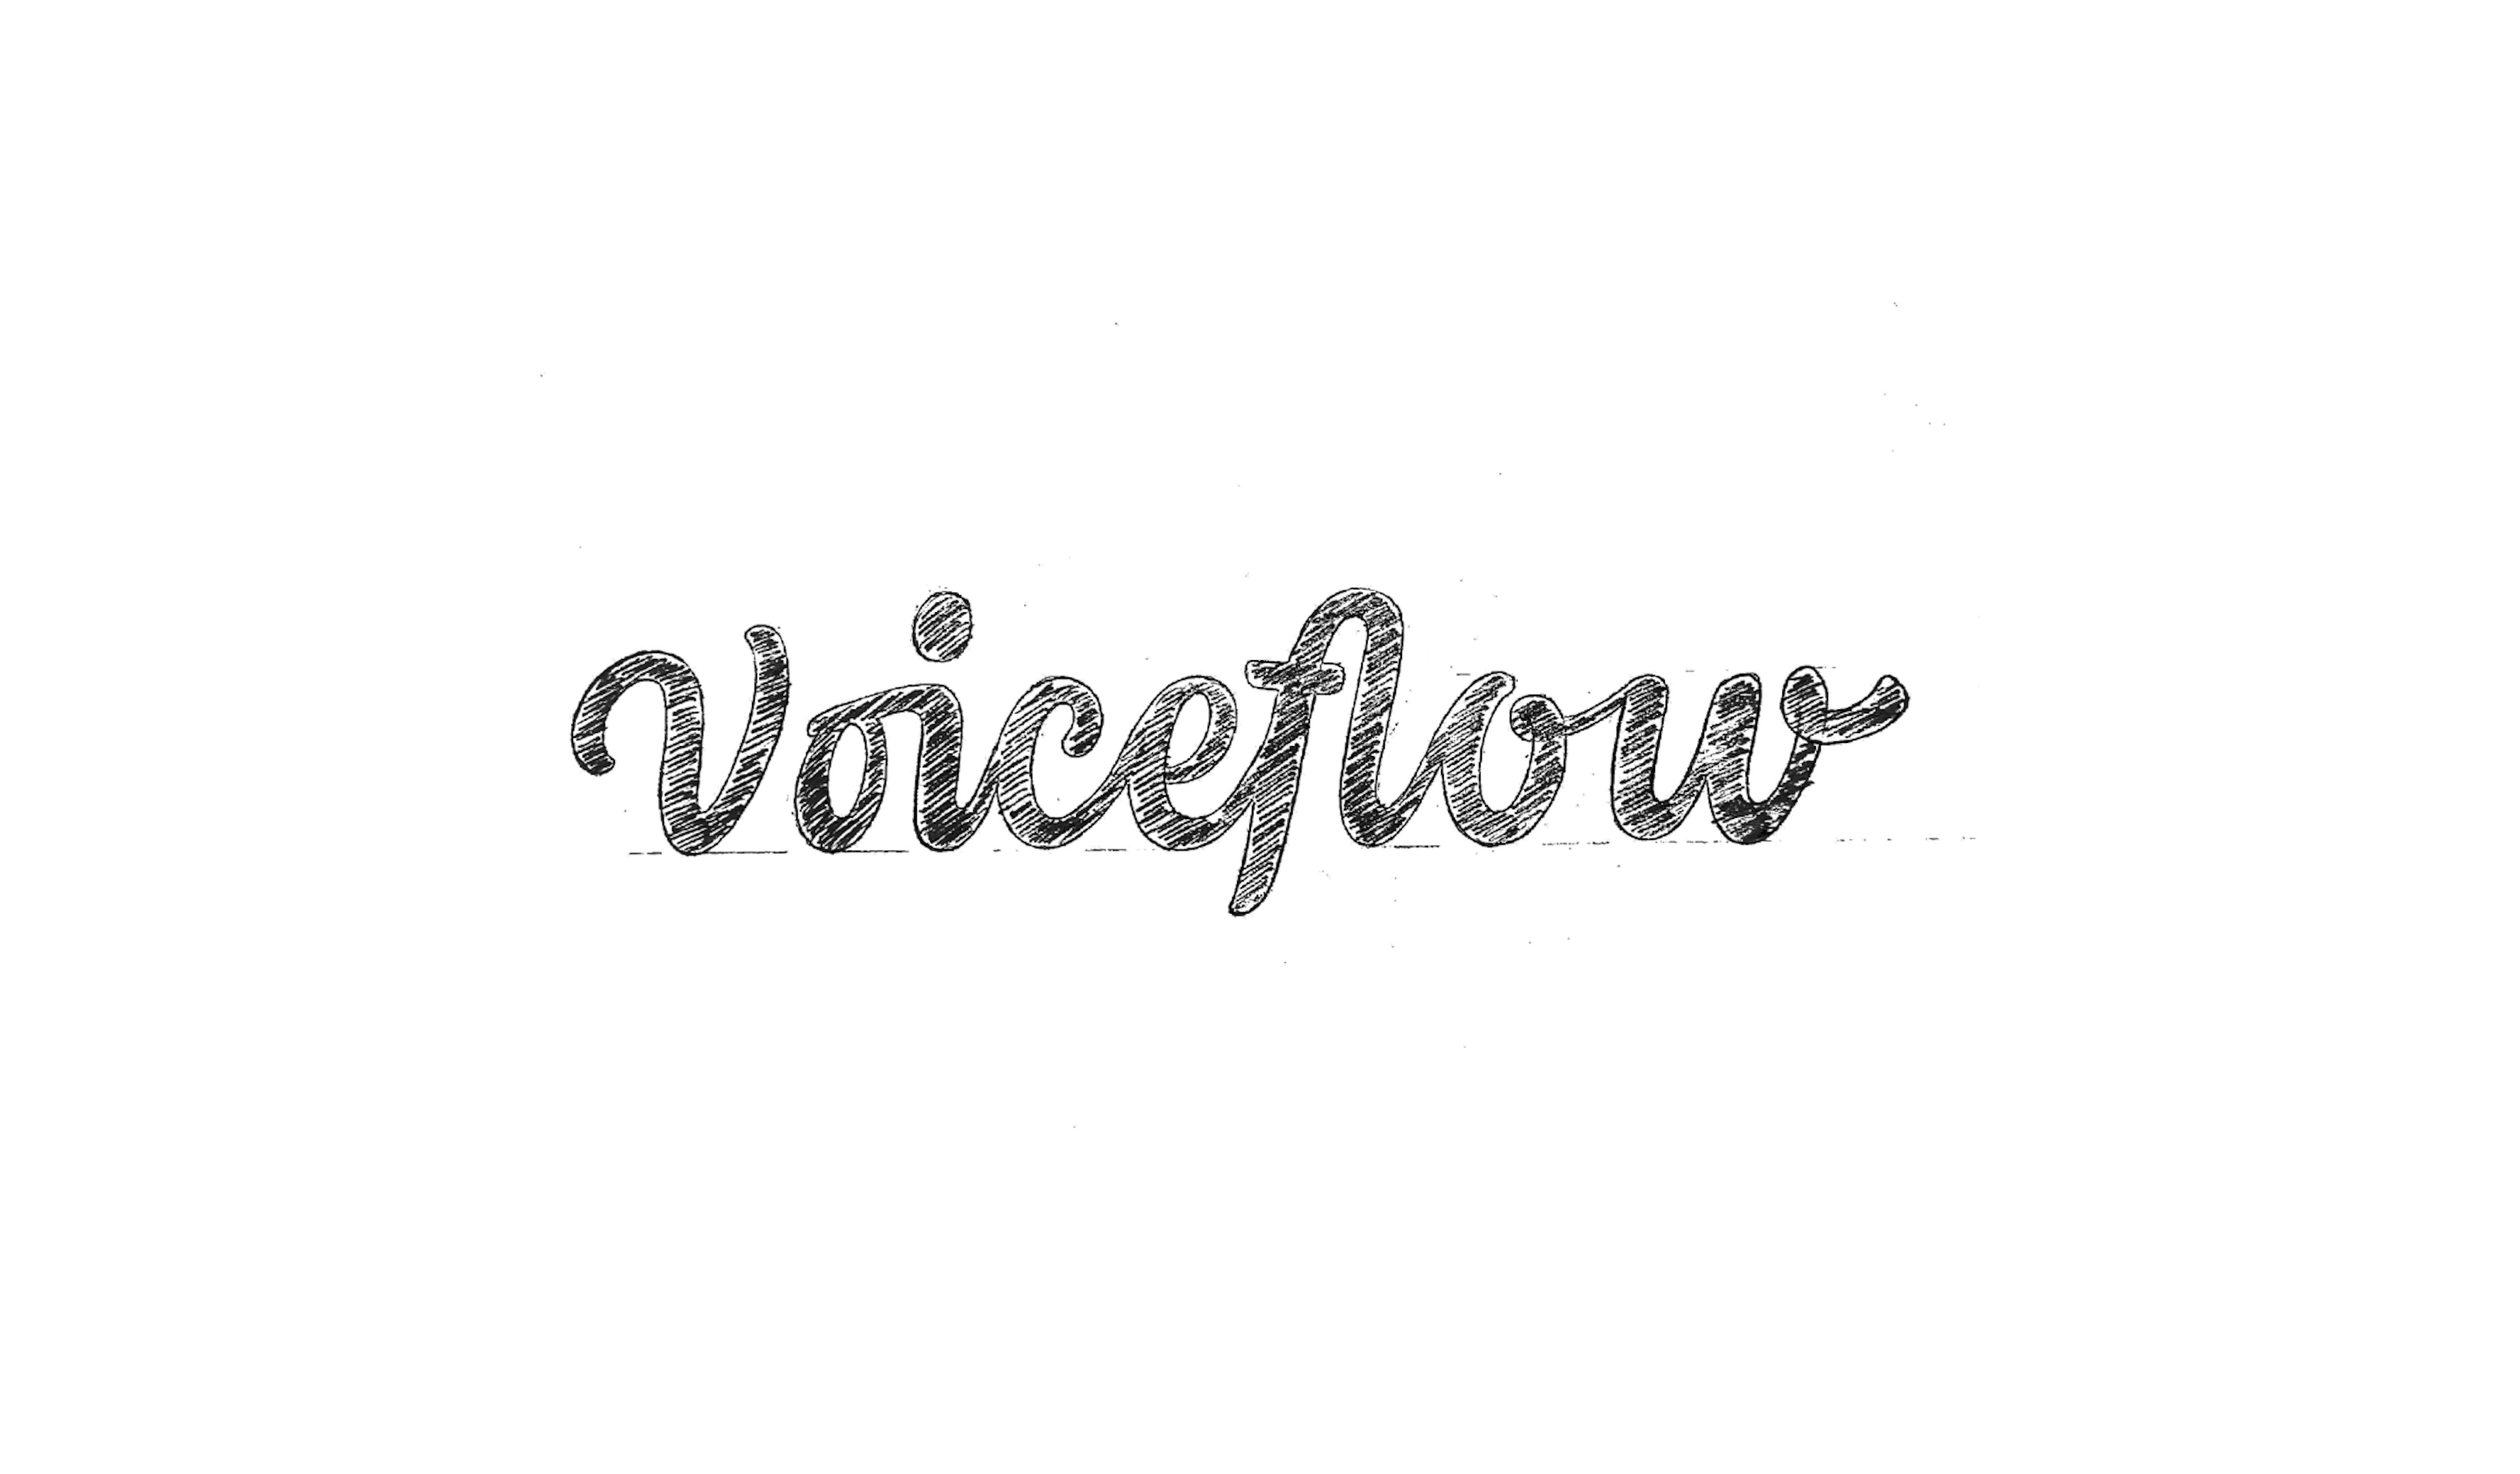 voiceflow sketch wordmark